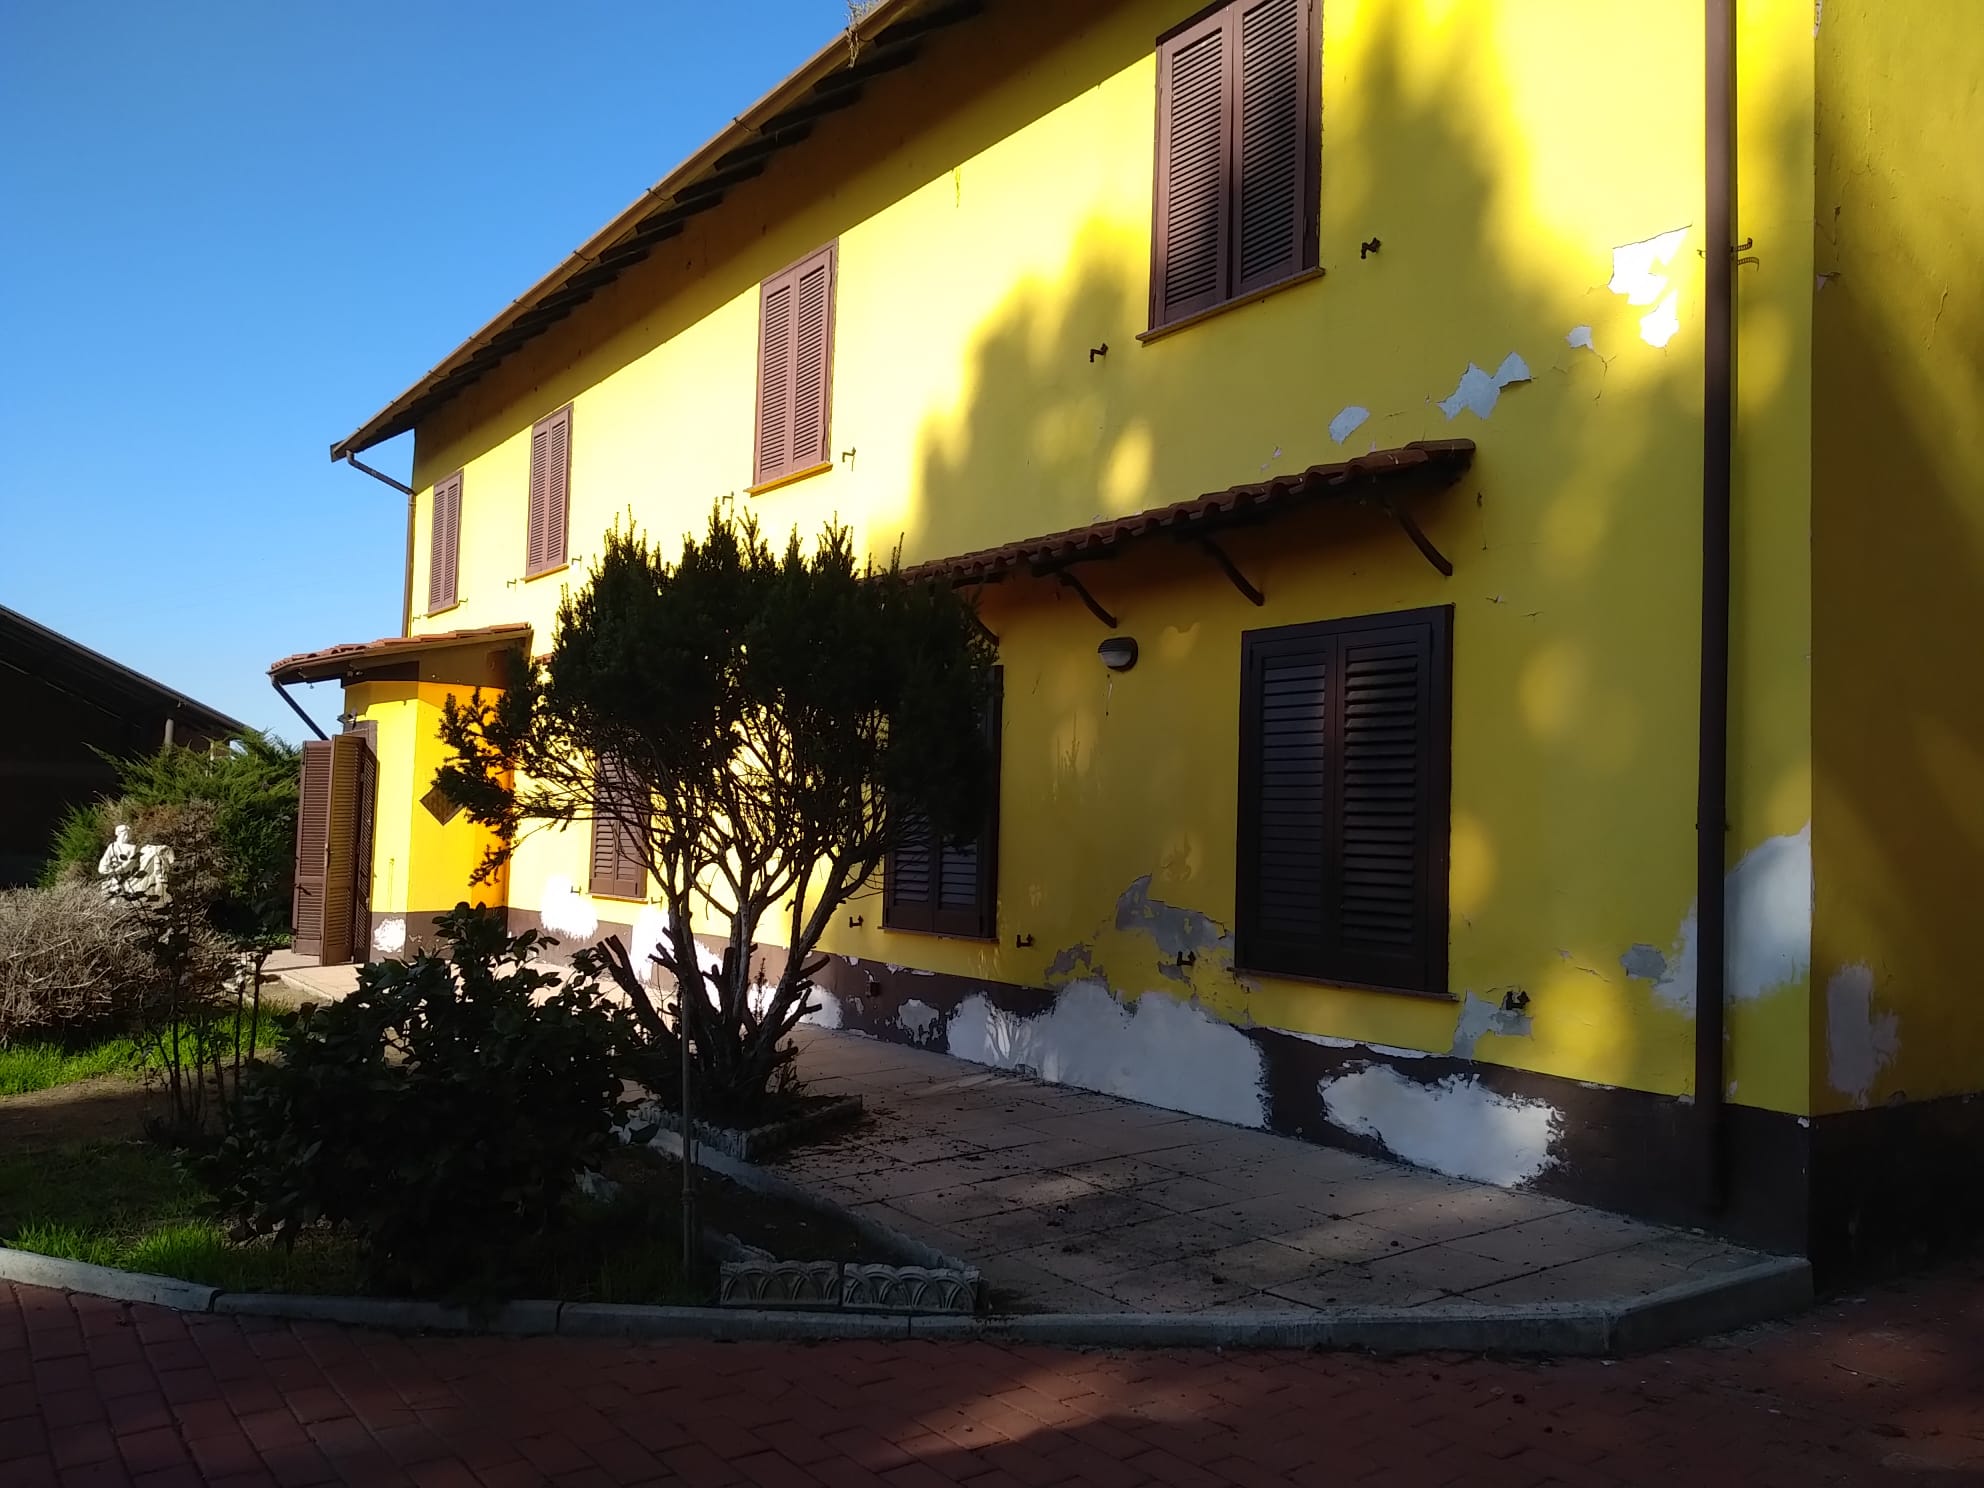 Cod. 9998 - Villa su 2 livelli a Pavia